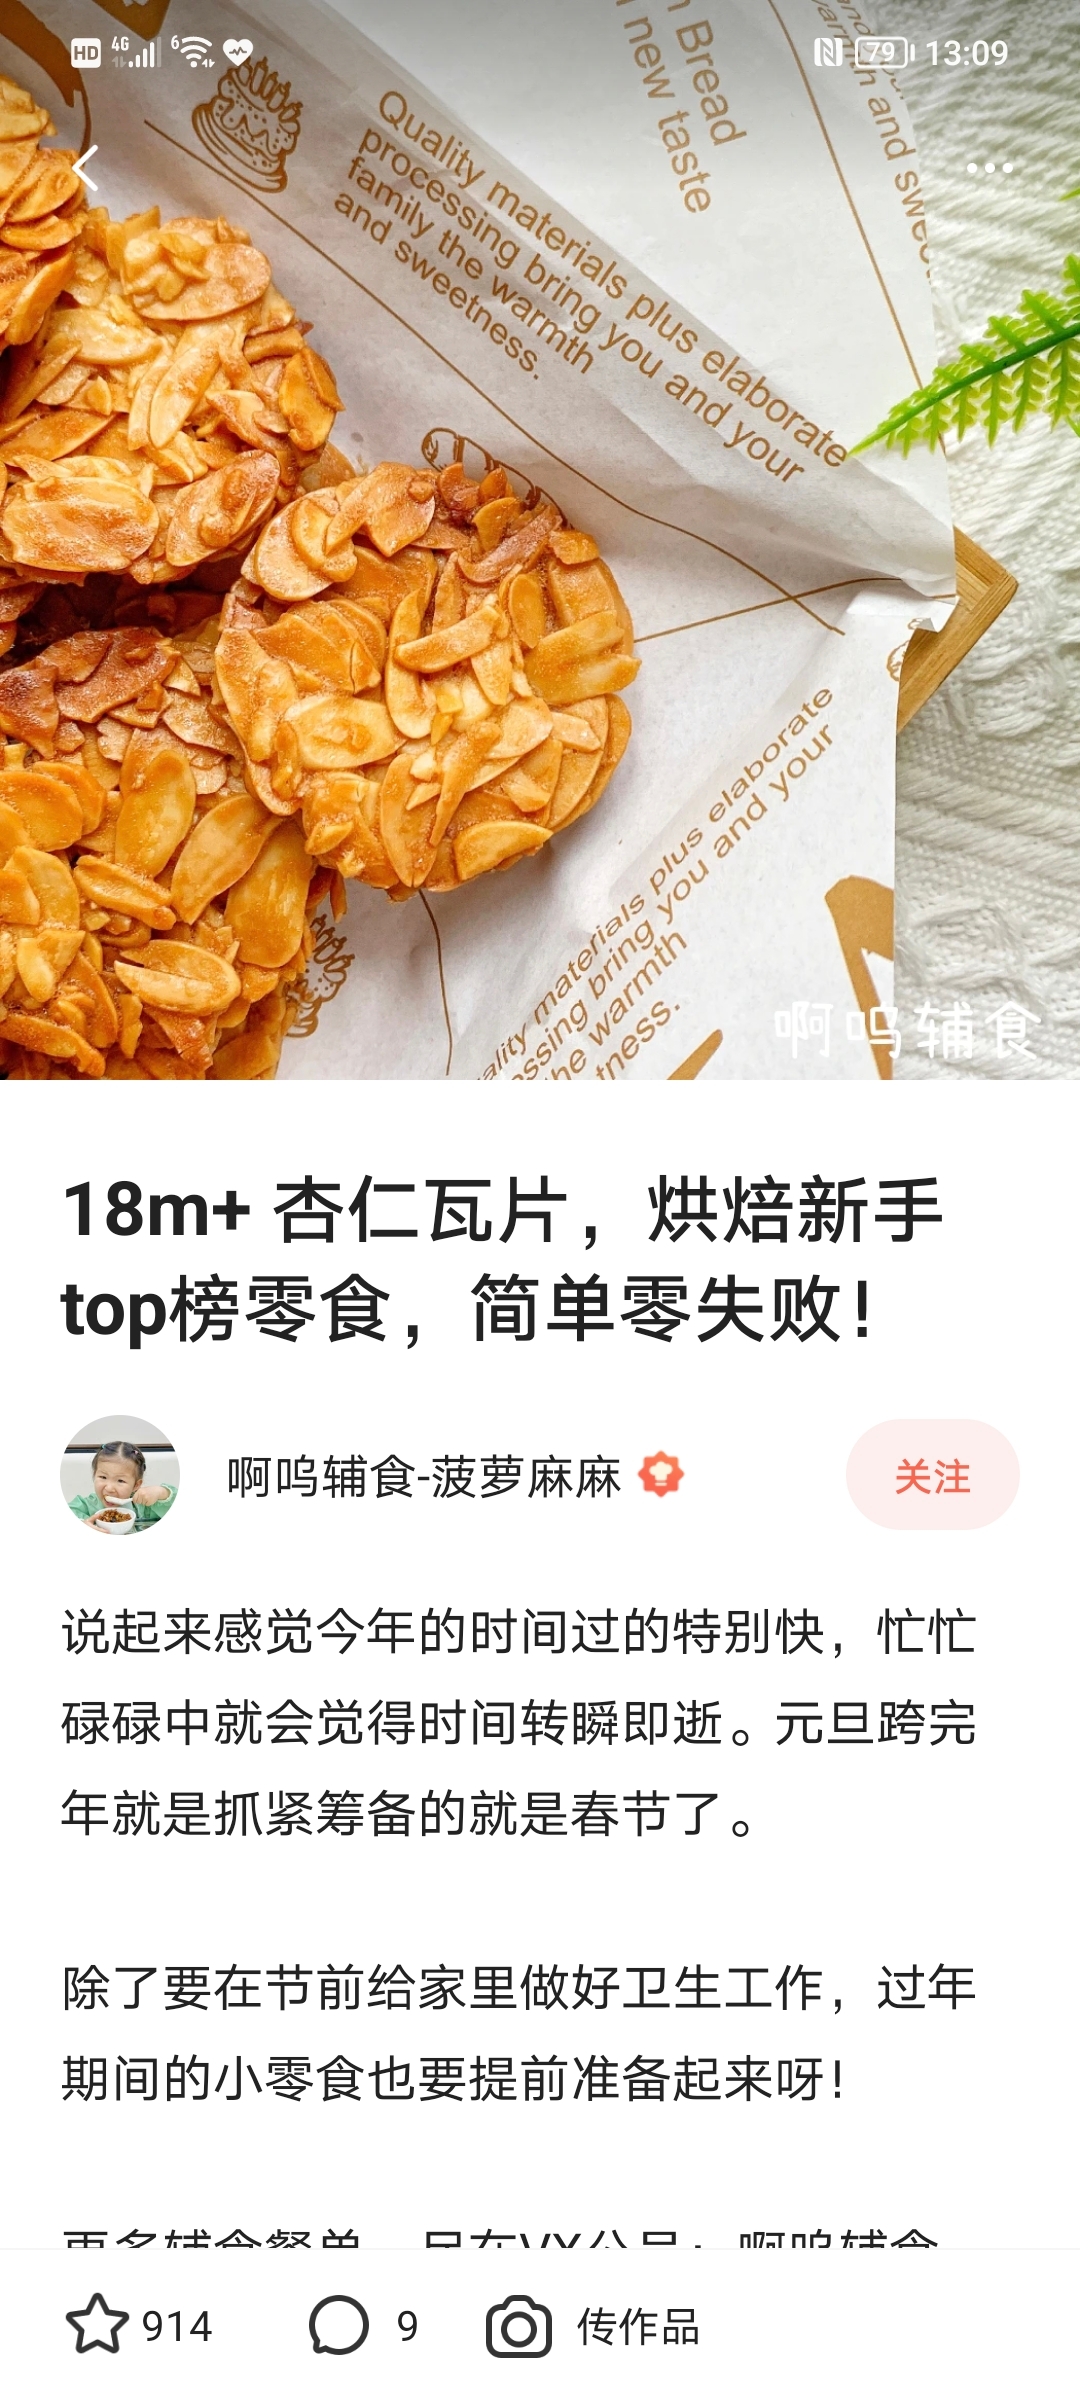 18m+ 杏仁瓦片，烘焙新手top榜零食，简单零失败！